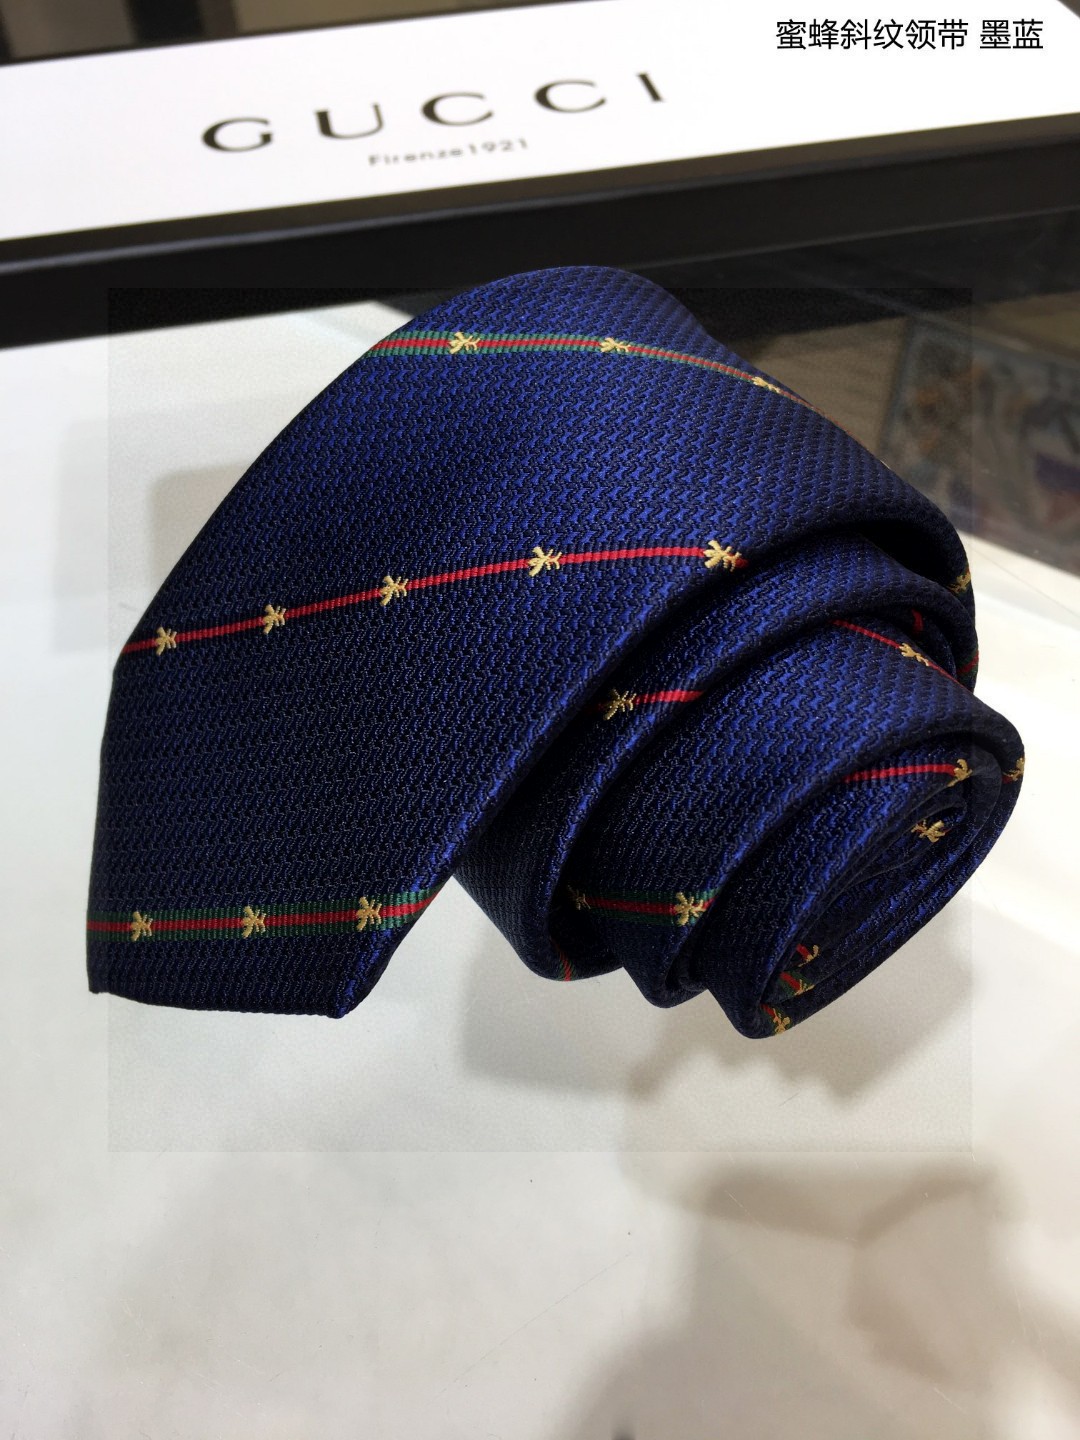 上新特价G家男士领带系列蜜蜂斜纹领带稀有展现精湛手工与时尚优雅的理想选择这款领带将标志性的主题动物小蜜蜂